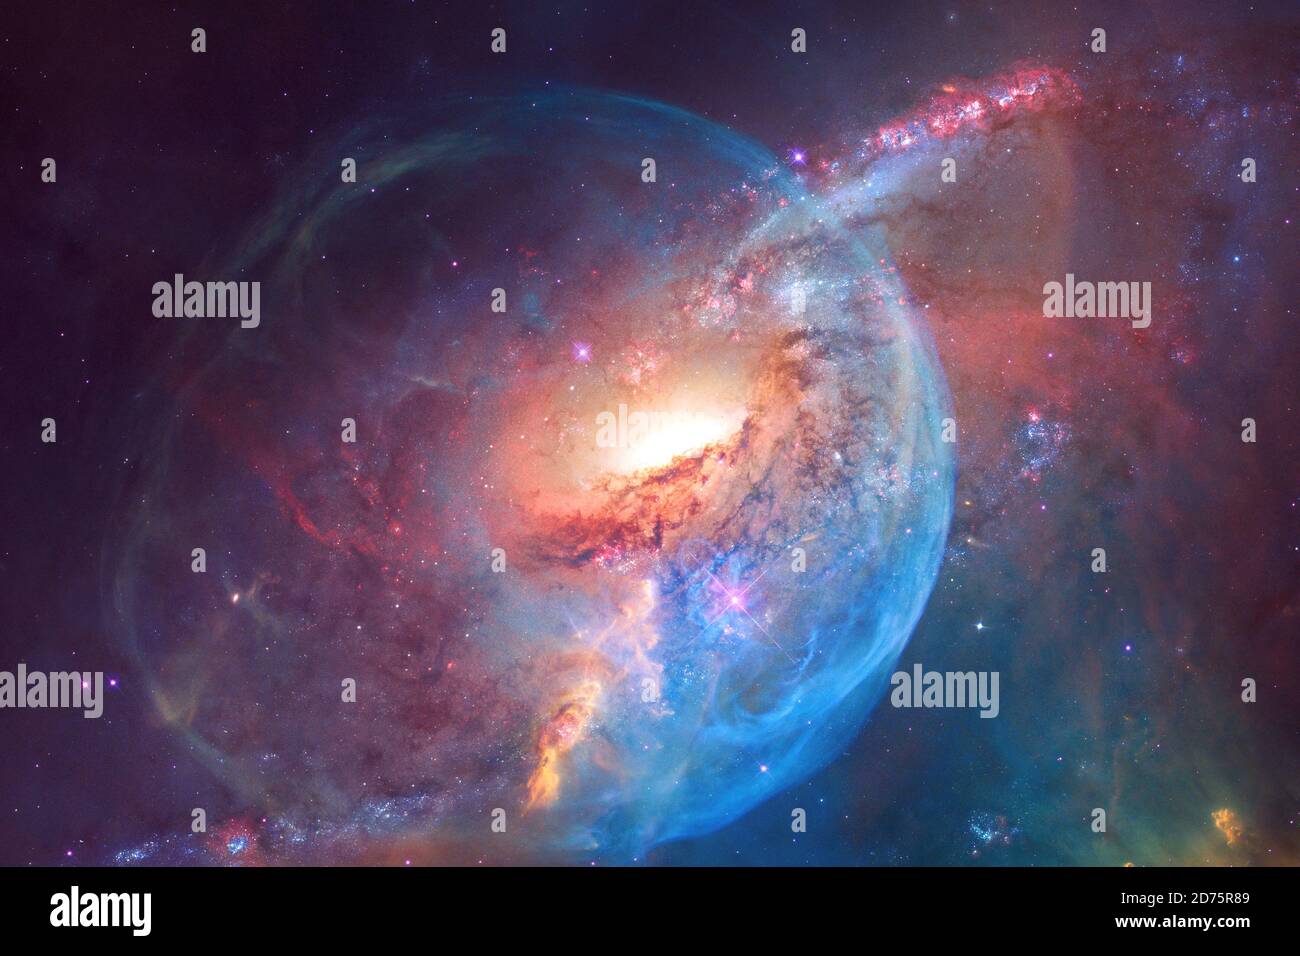 Belle galaxie quelque part dans l'espace profond. Papier peint cosmique. Éléments de cette image fournis par la NASA Banque D'Images